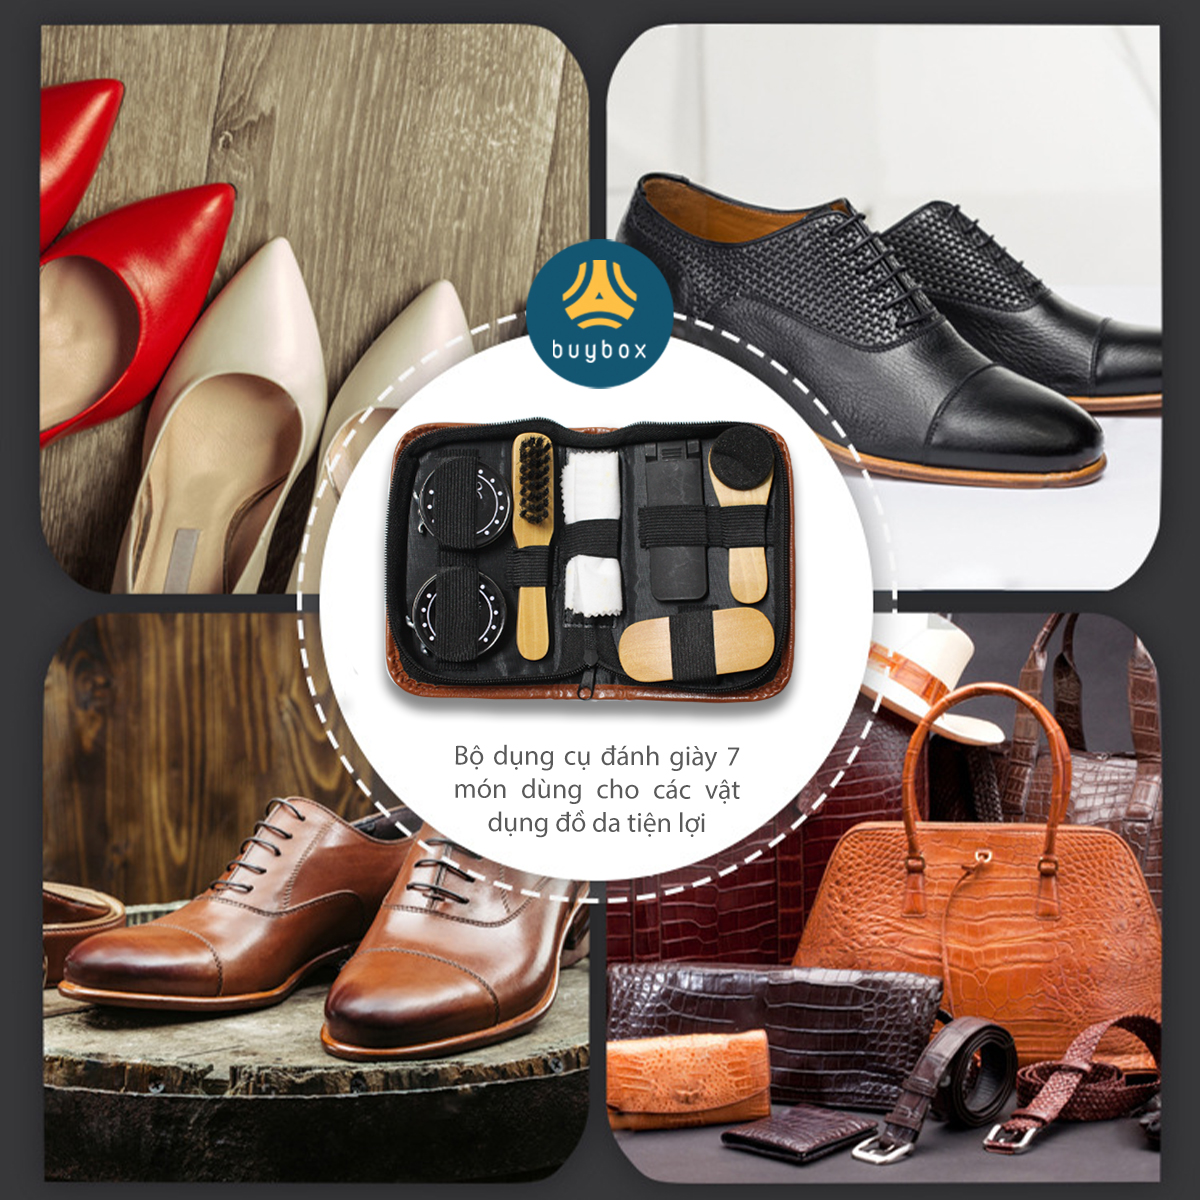 Bộ dụng cụ vệ sinh giày 7 món, thiết kế sang trọng thanh lịch, vệ sinh bụi bẩn và chăm sóc đôi giày bạn - Buybox - BBPK293